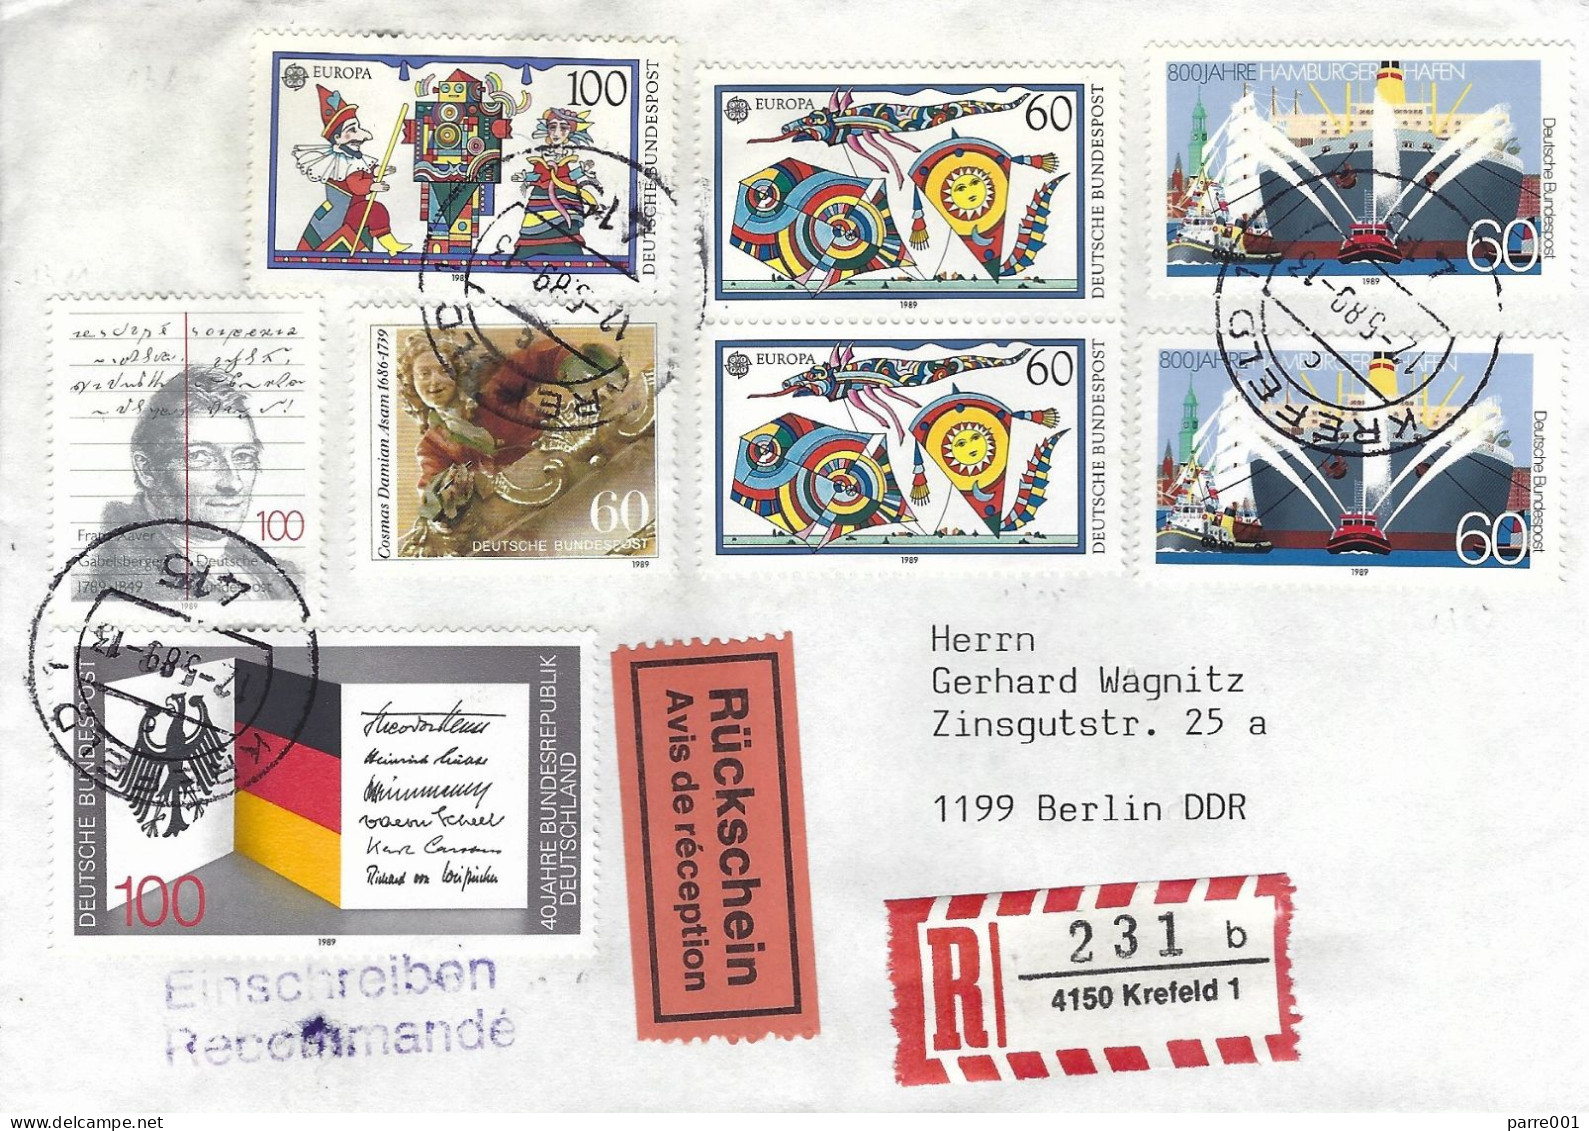 Deutschland Germany 1989 Krefeld CEPT Children Games Gabelsberger Shorthand AR Advice Receipt Registered Cover - 1989